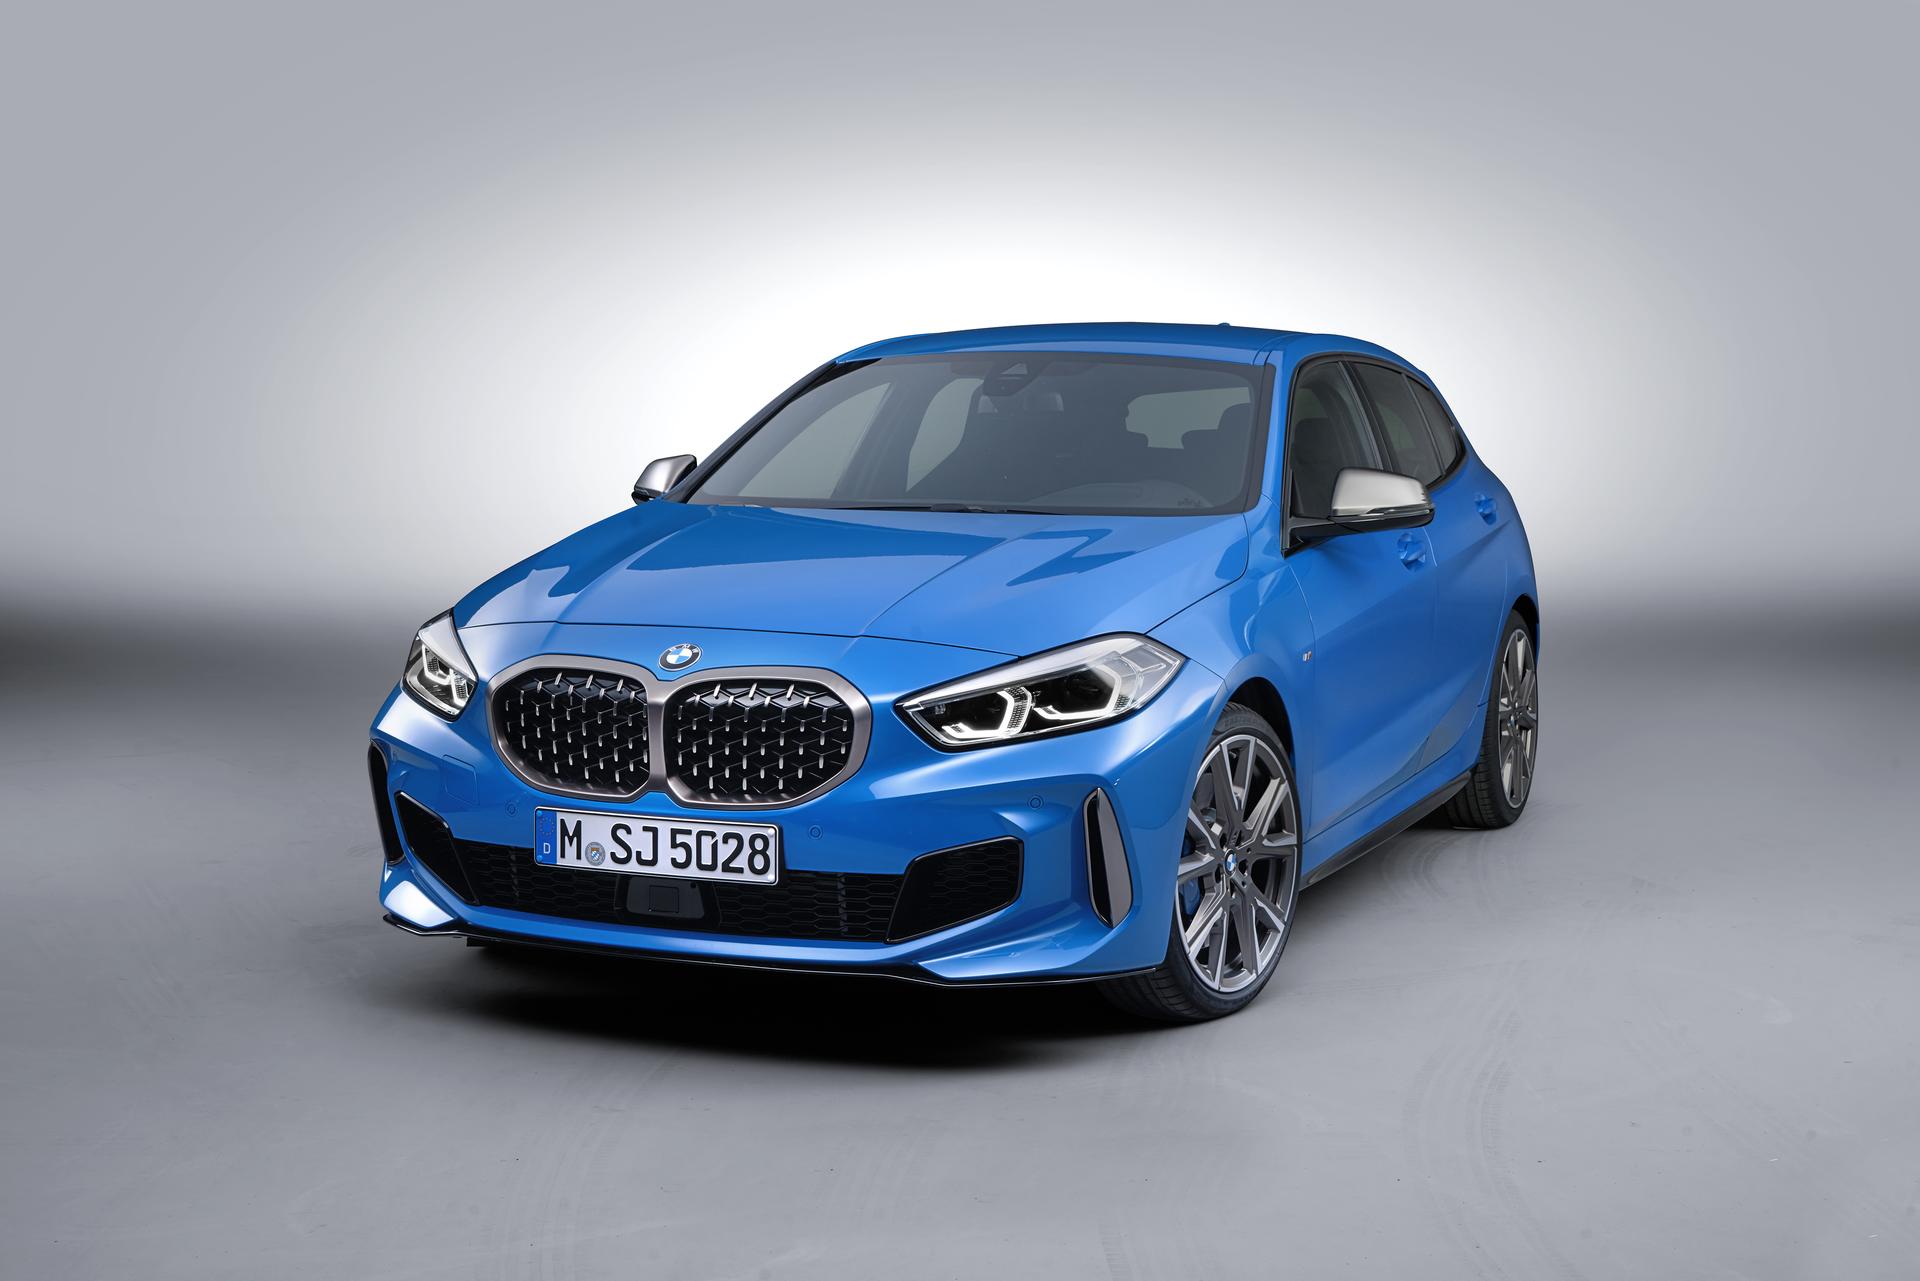 BMW oficiálně ukázalo novou řadu 1